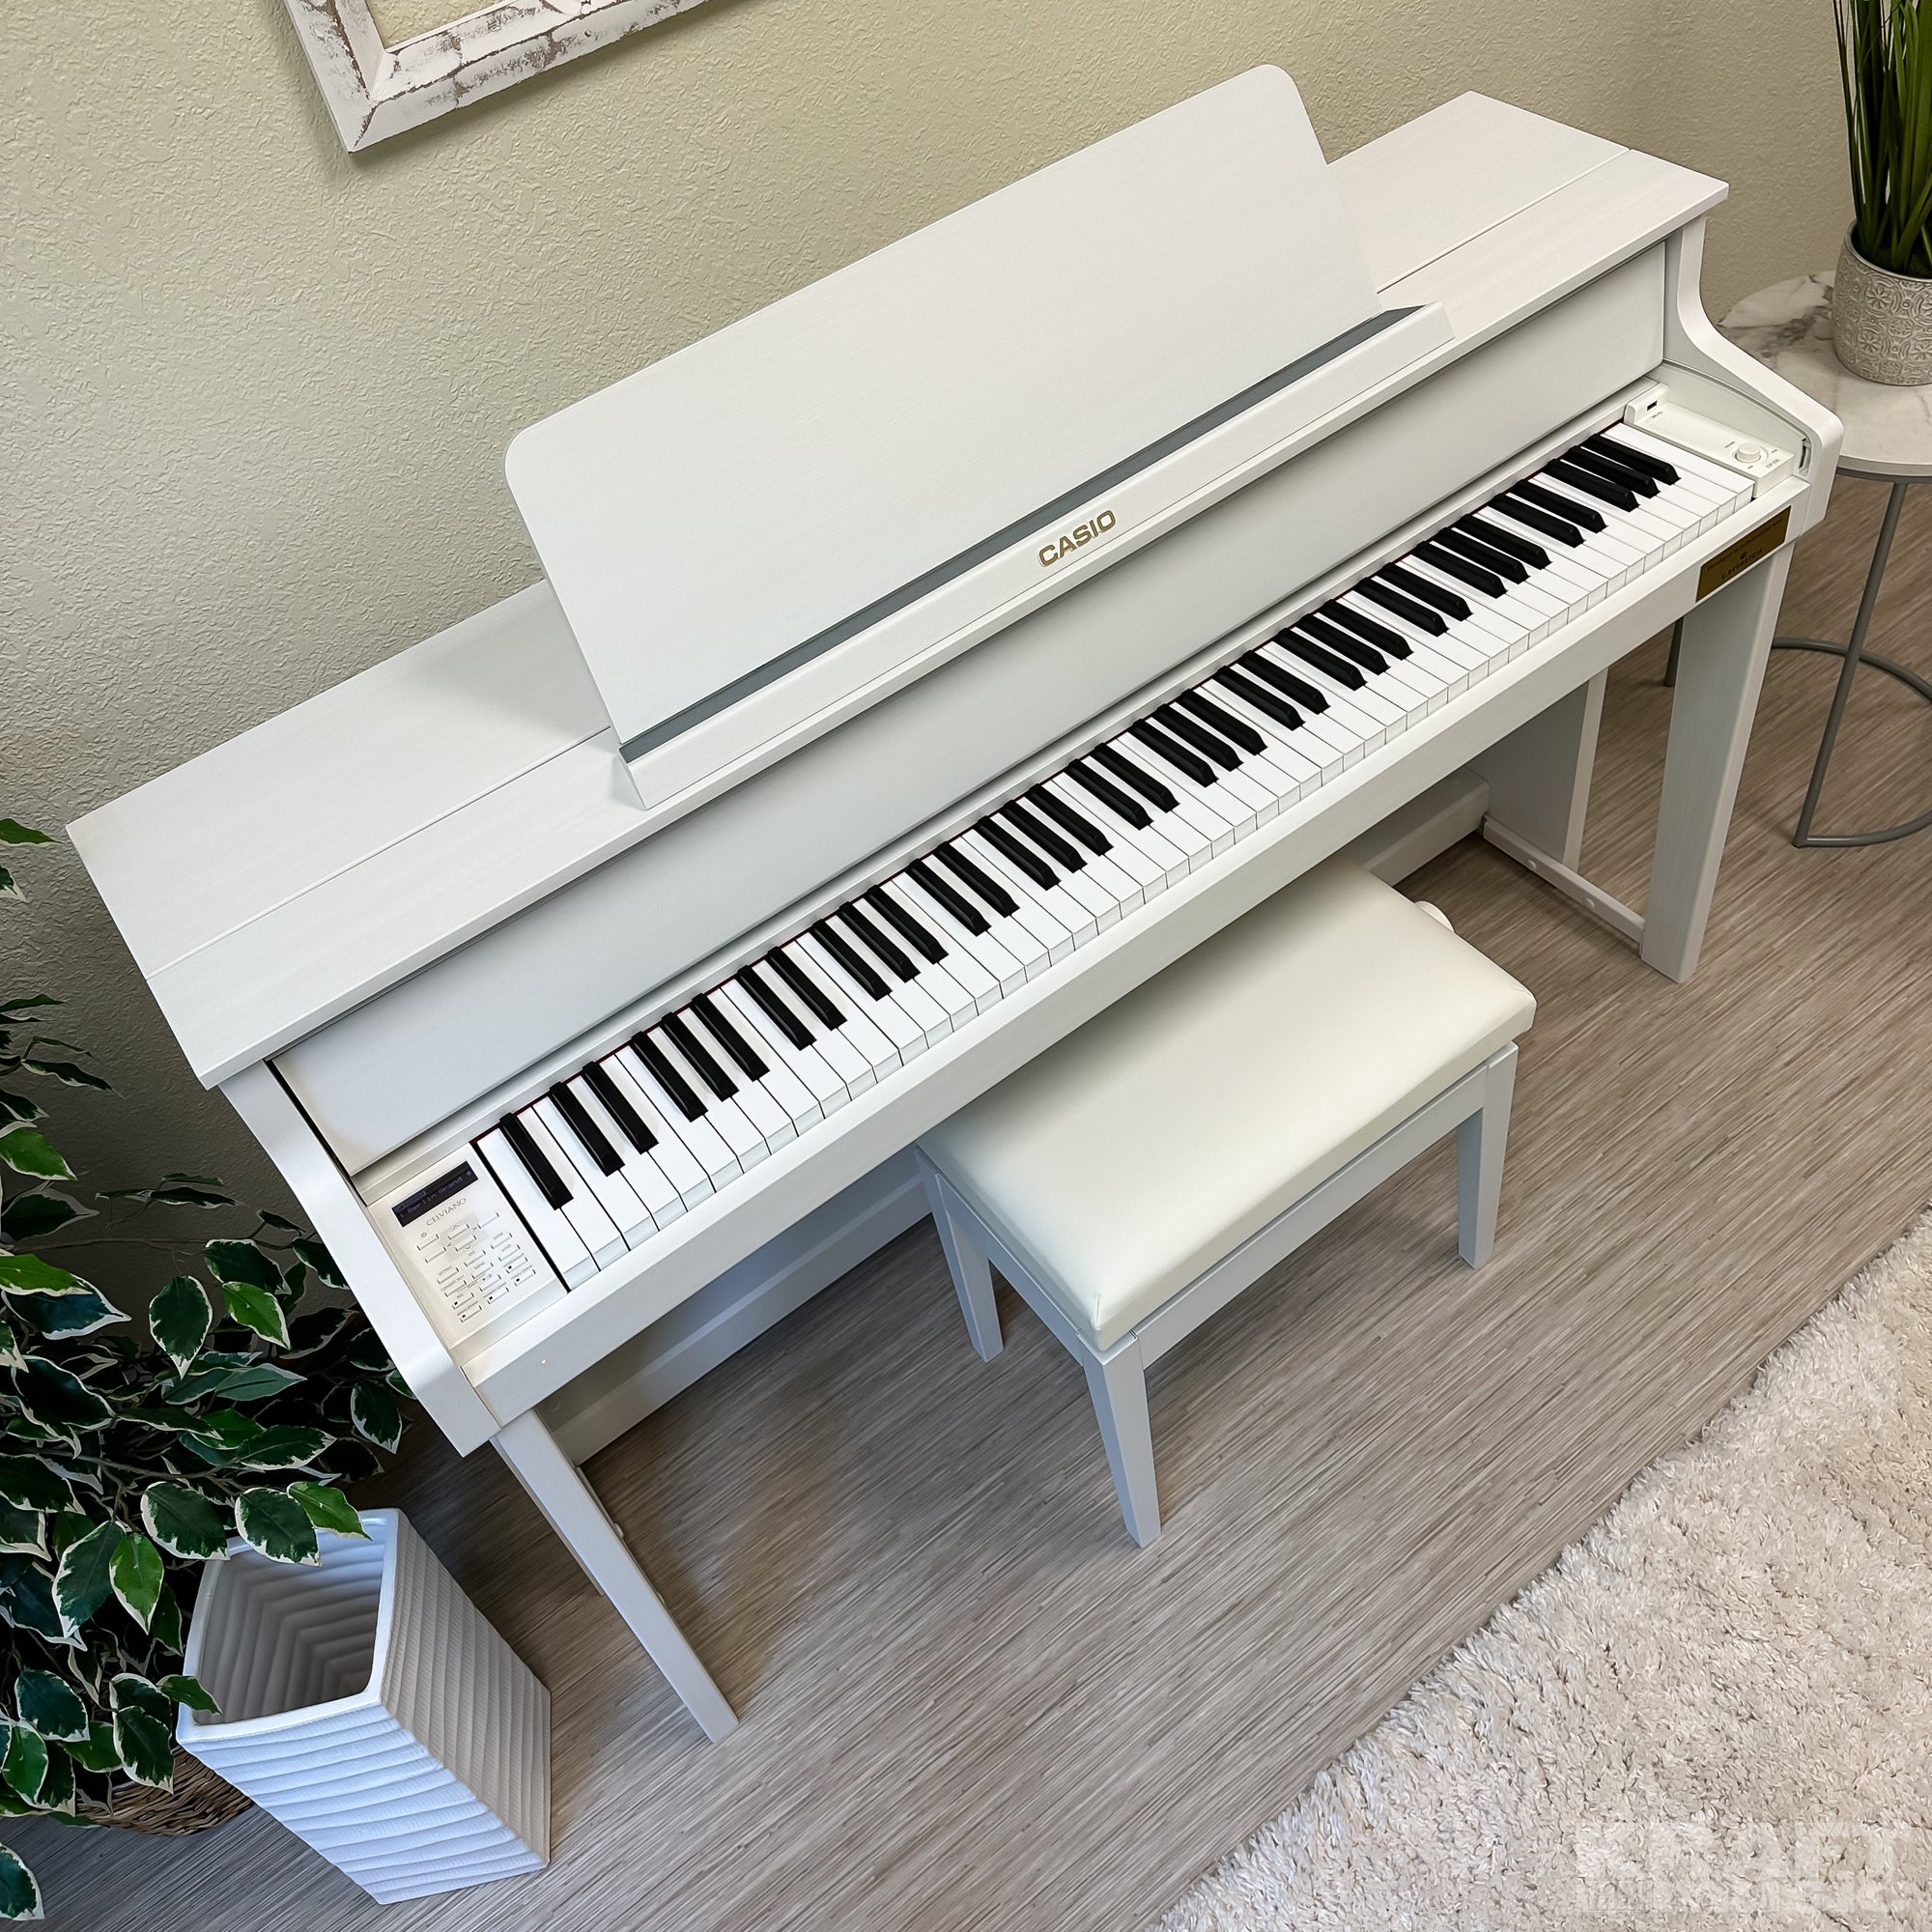 Casio Celviano Grand Hybrid GP-310 Digital Piano - Natural White 